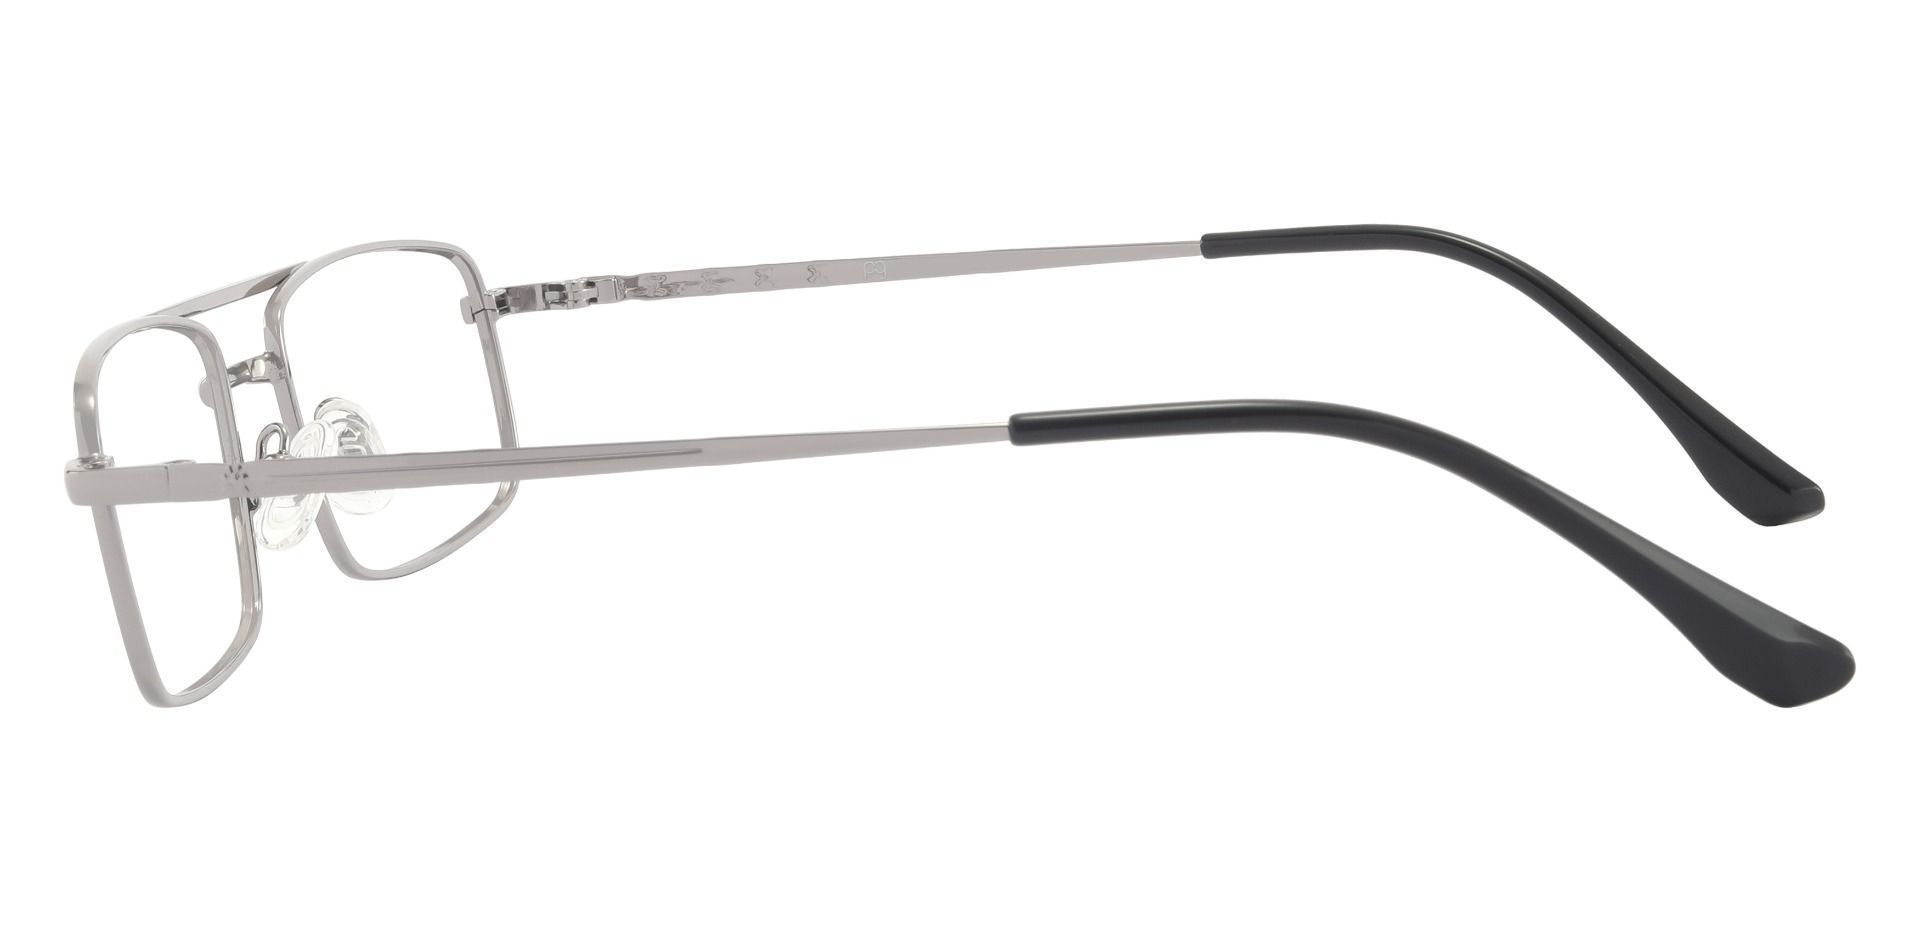 Ortega Aviator Prescription Glasses - Silver